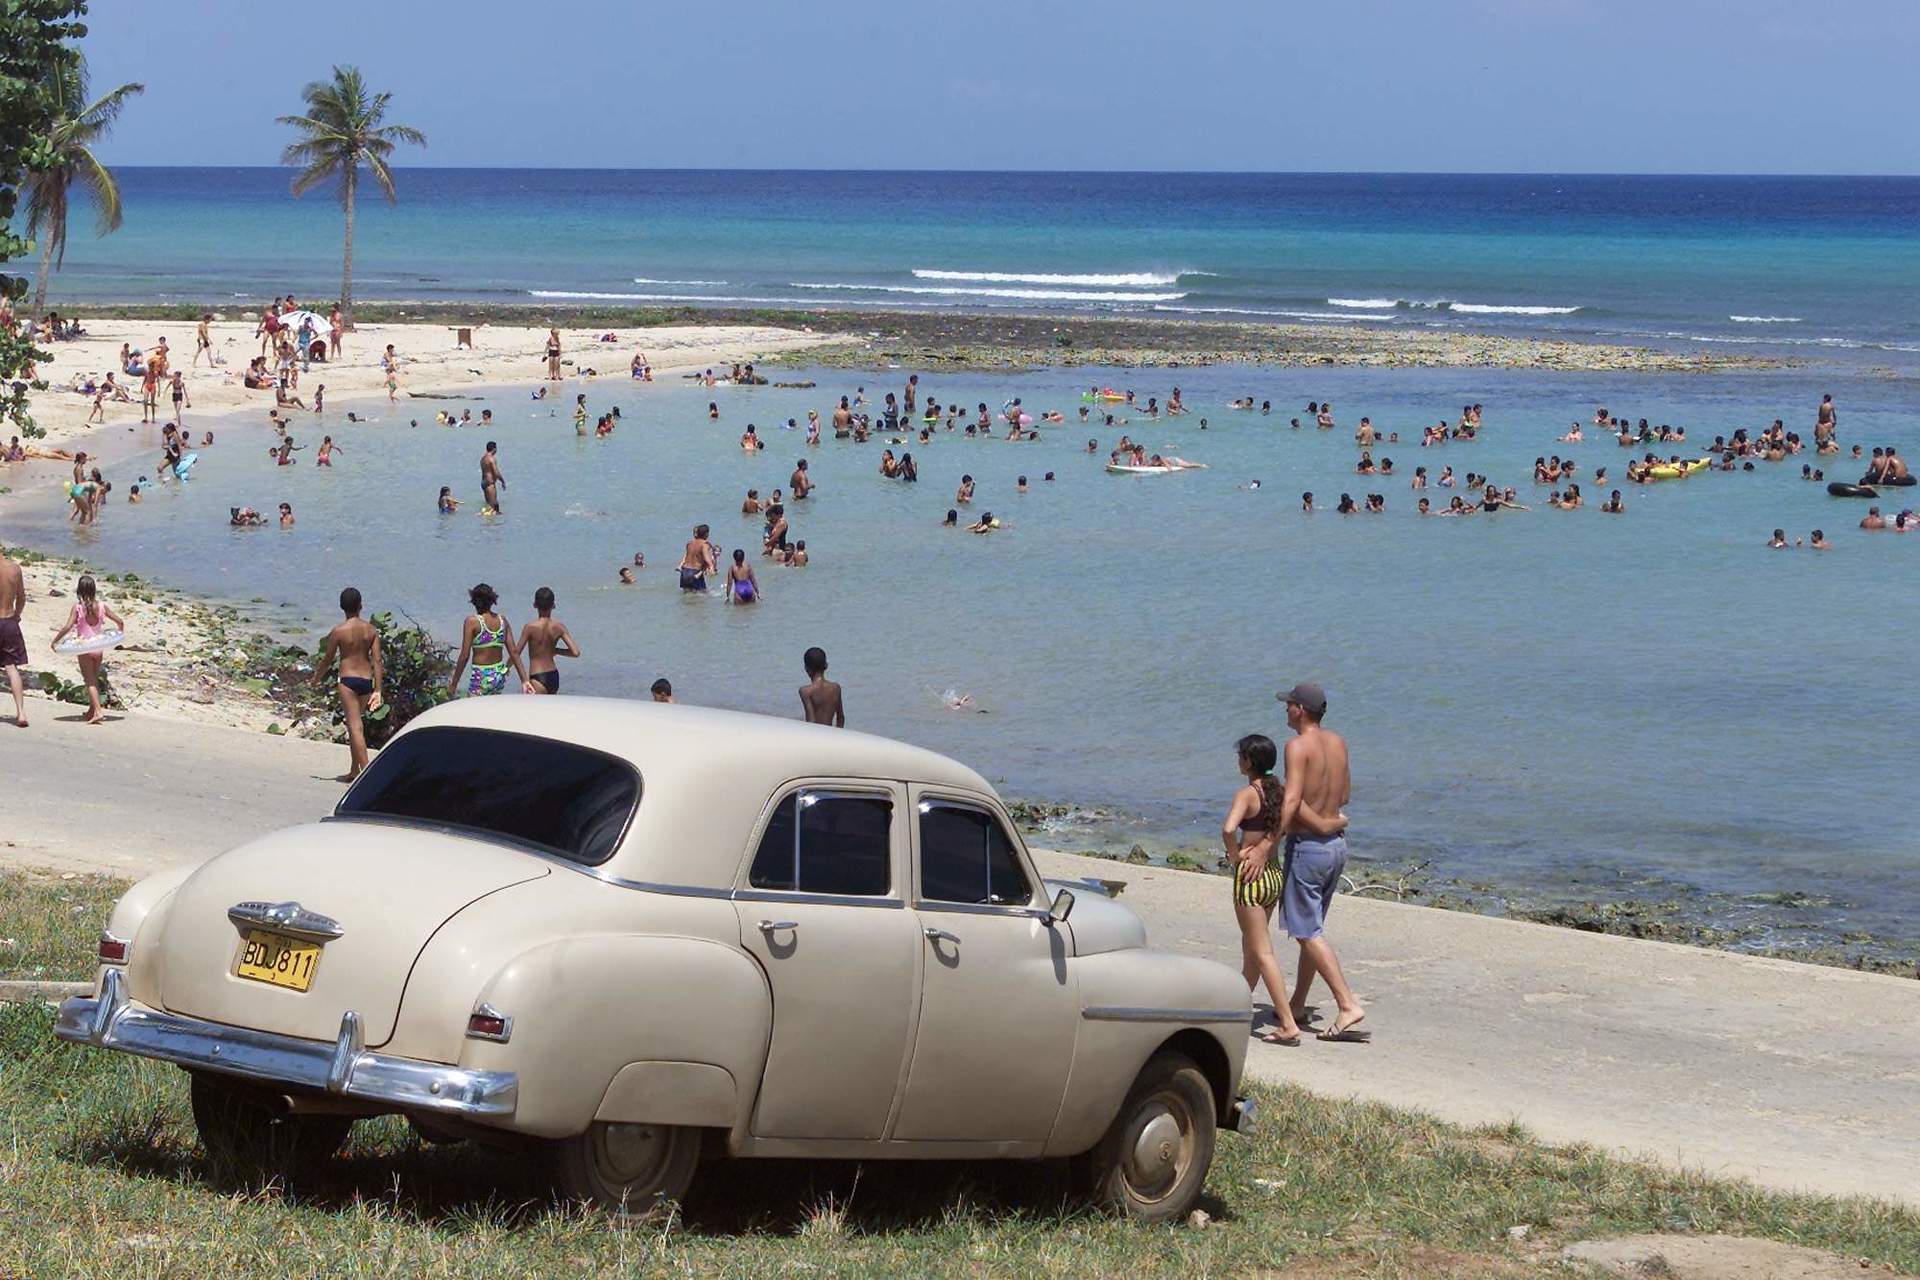 Куба машина на пляже